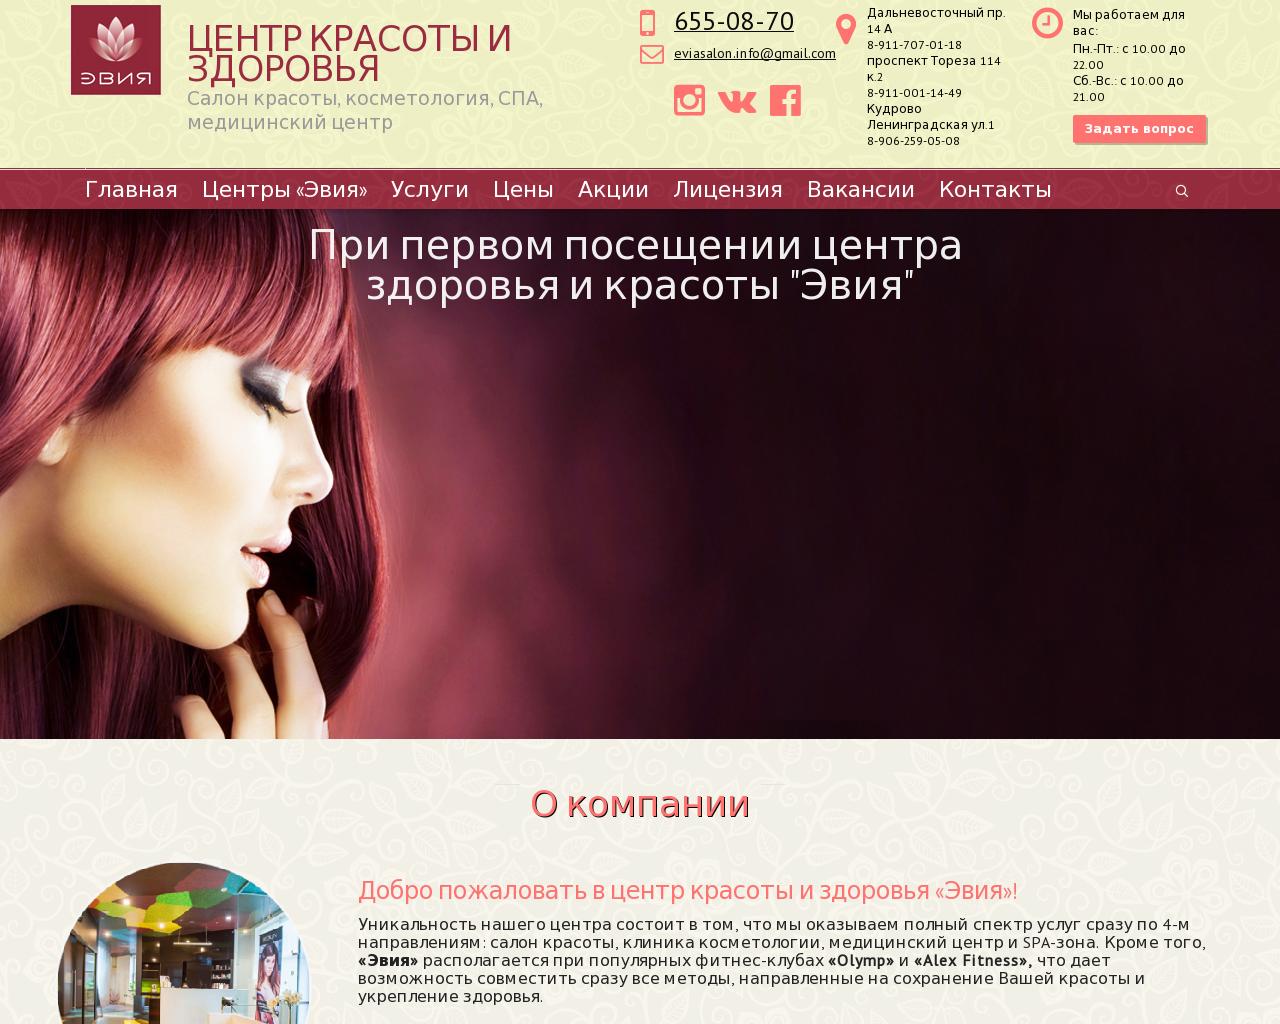 Изображение сайта eviasalon.ru в разрешении 1280x1024